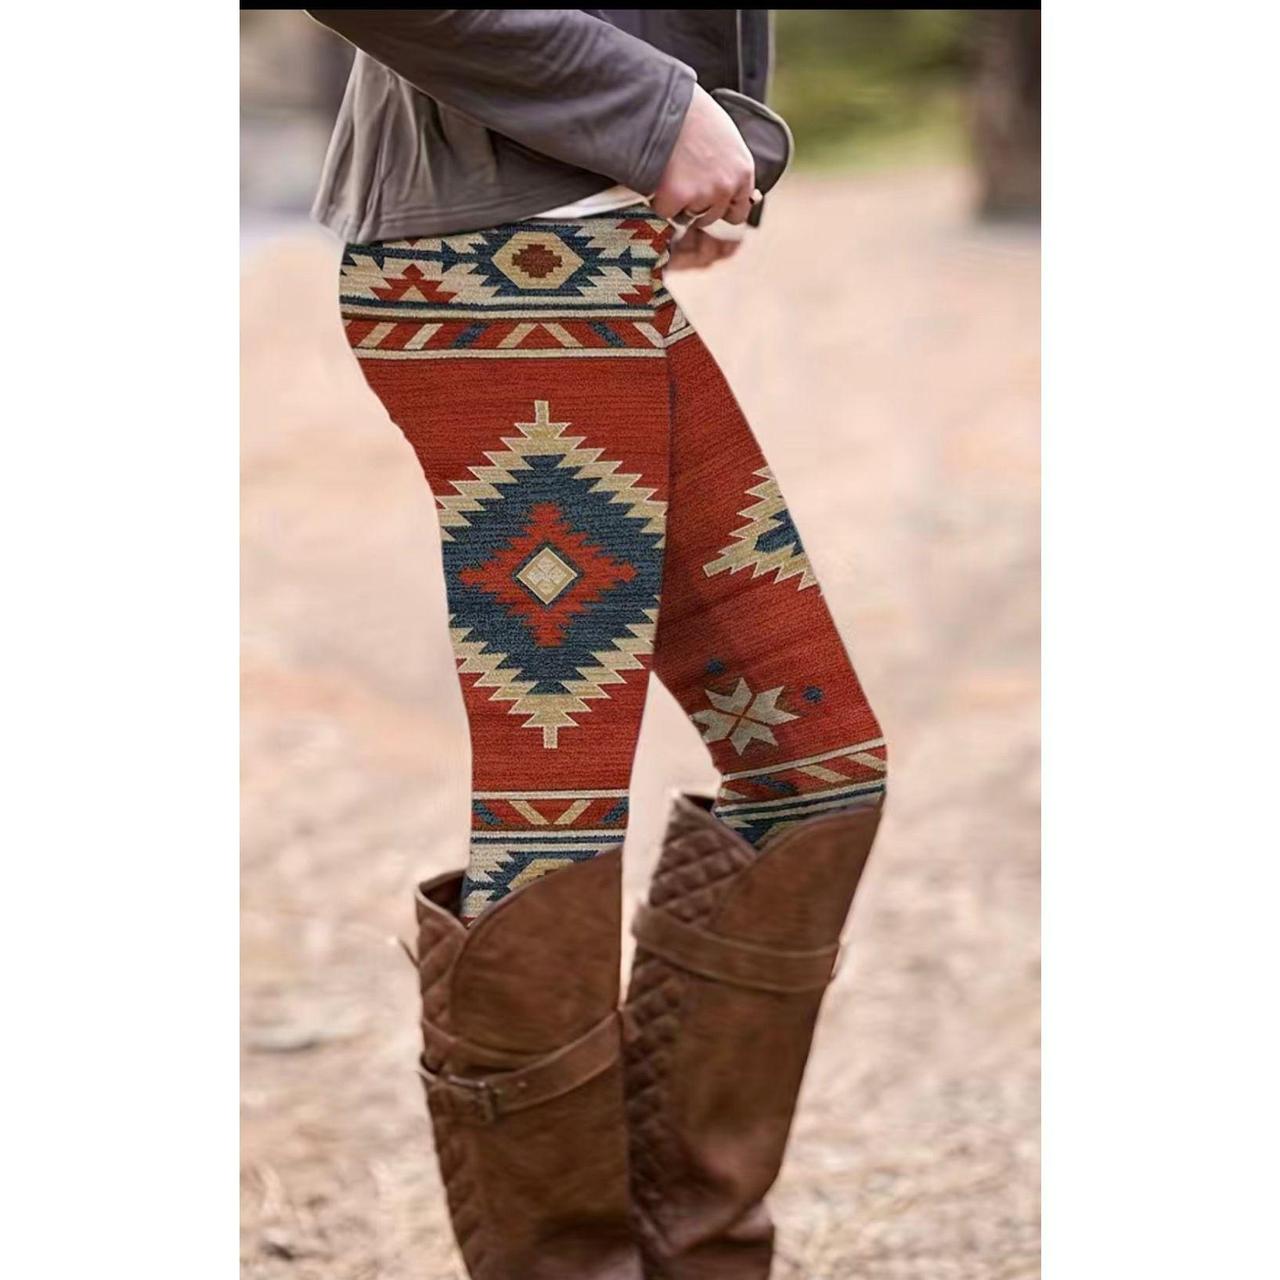 Ethnic western wear leggings for women